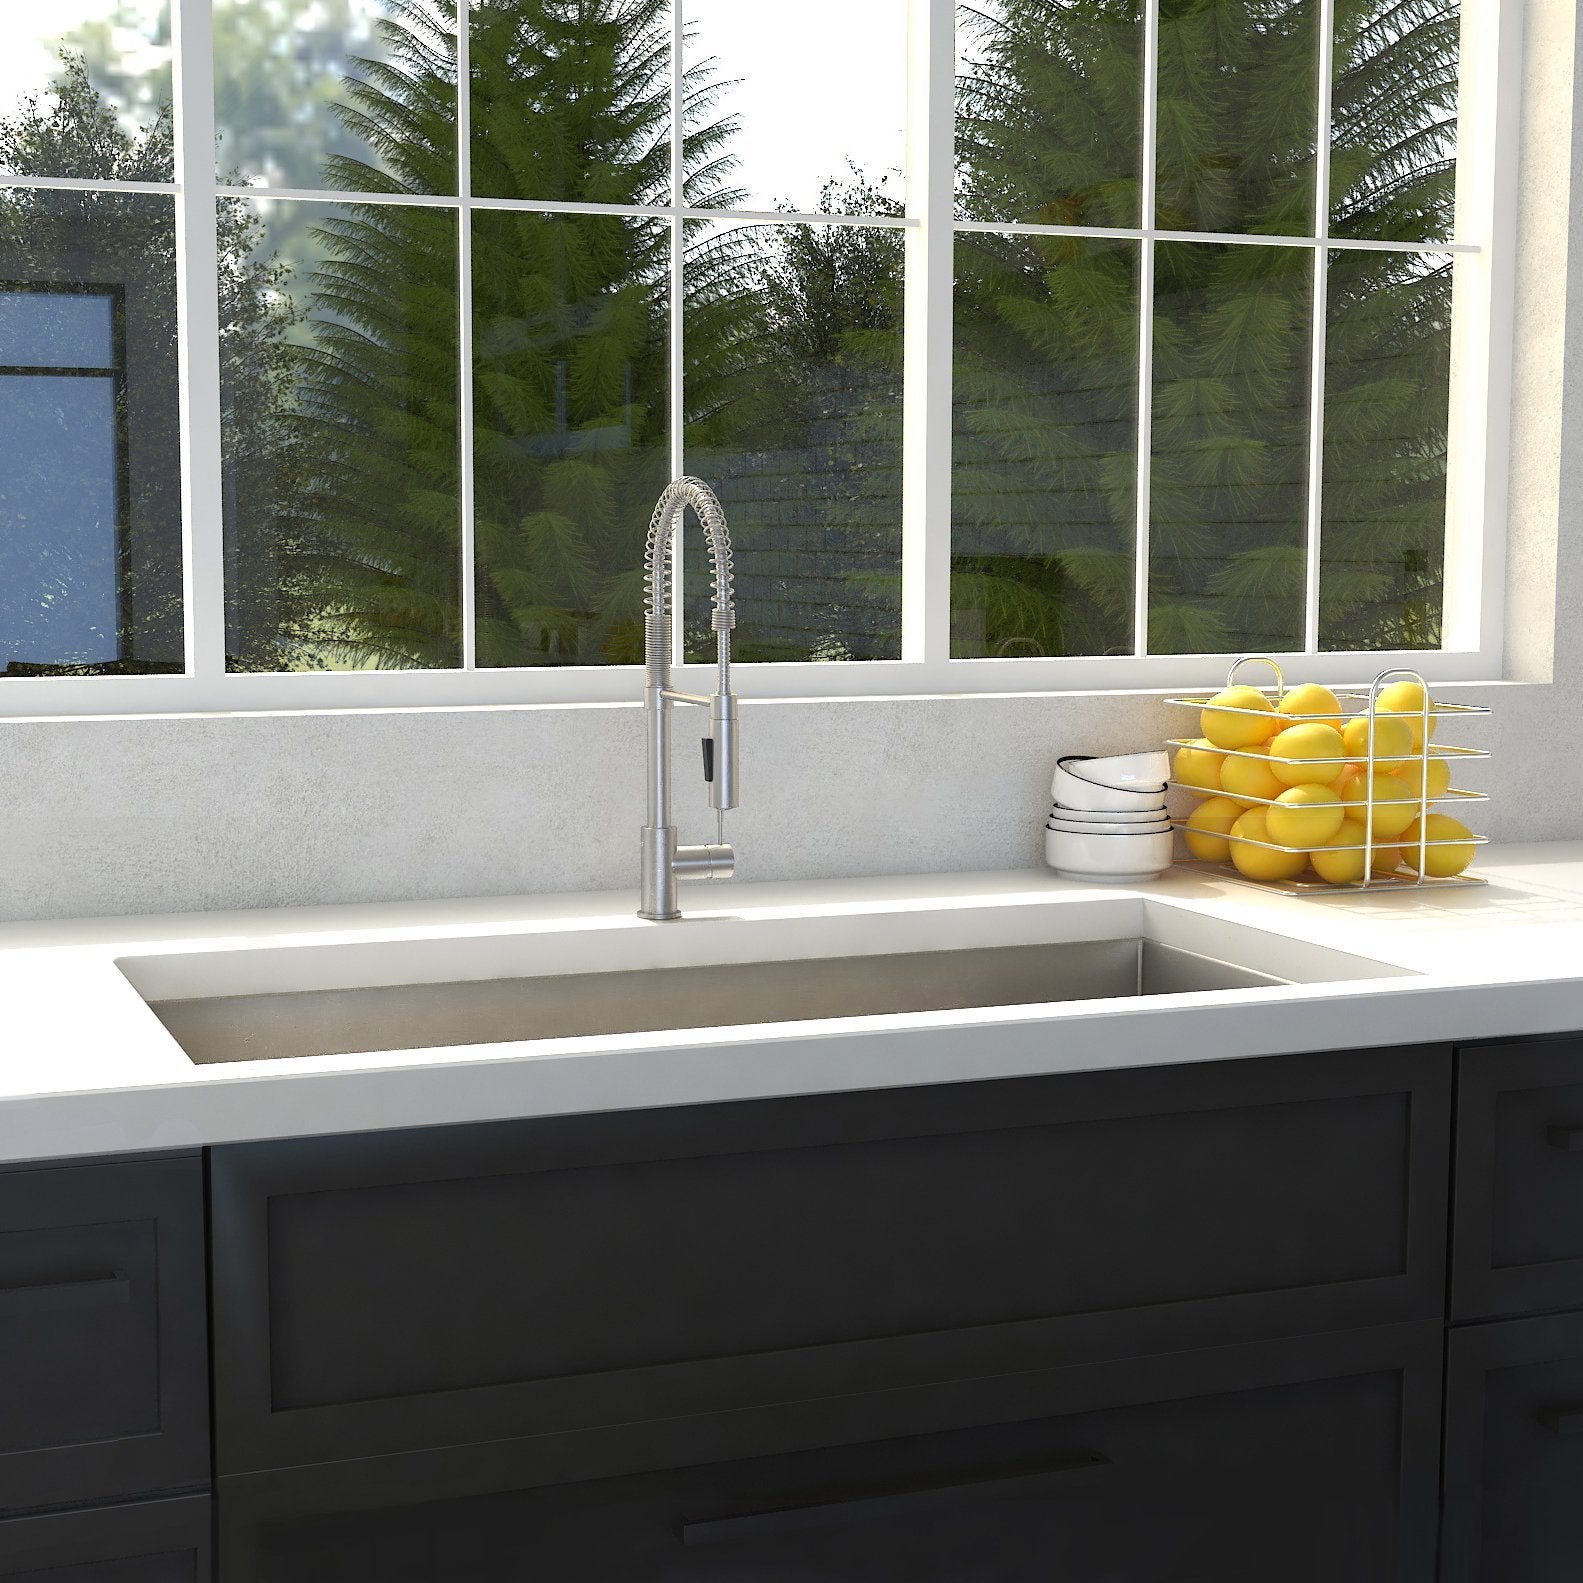 ZLINE 33" Classic Series Undermount Single Bowl Sink (SRS) - Rustic Kitchen & Bath - Sinks - ZLINE Kitchen and Bath